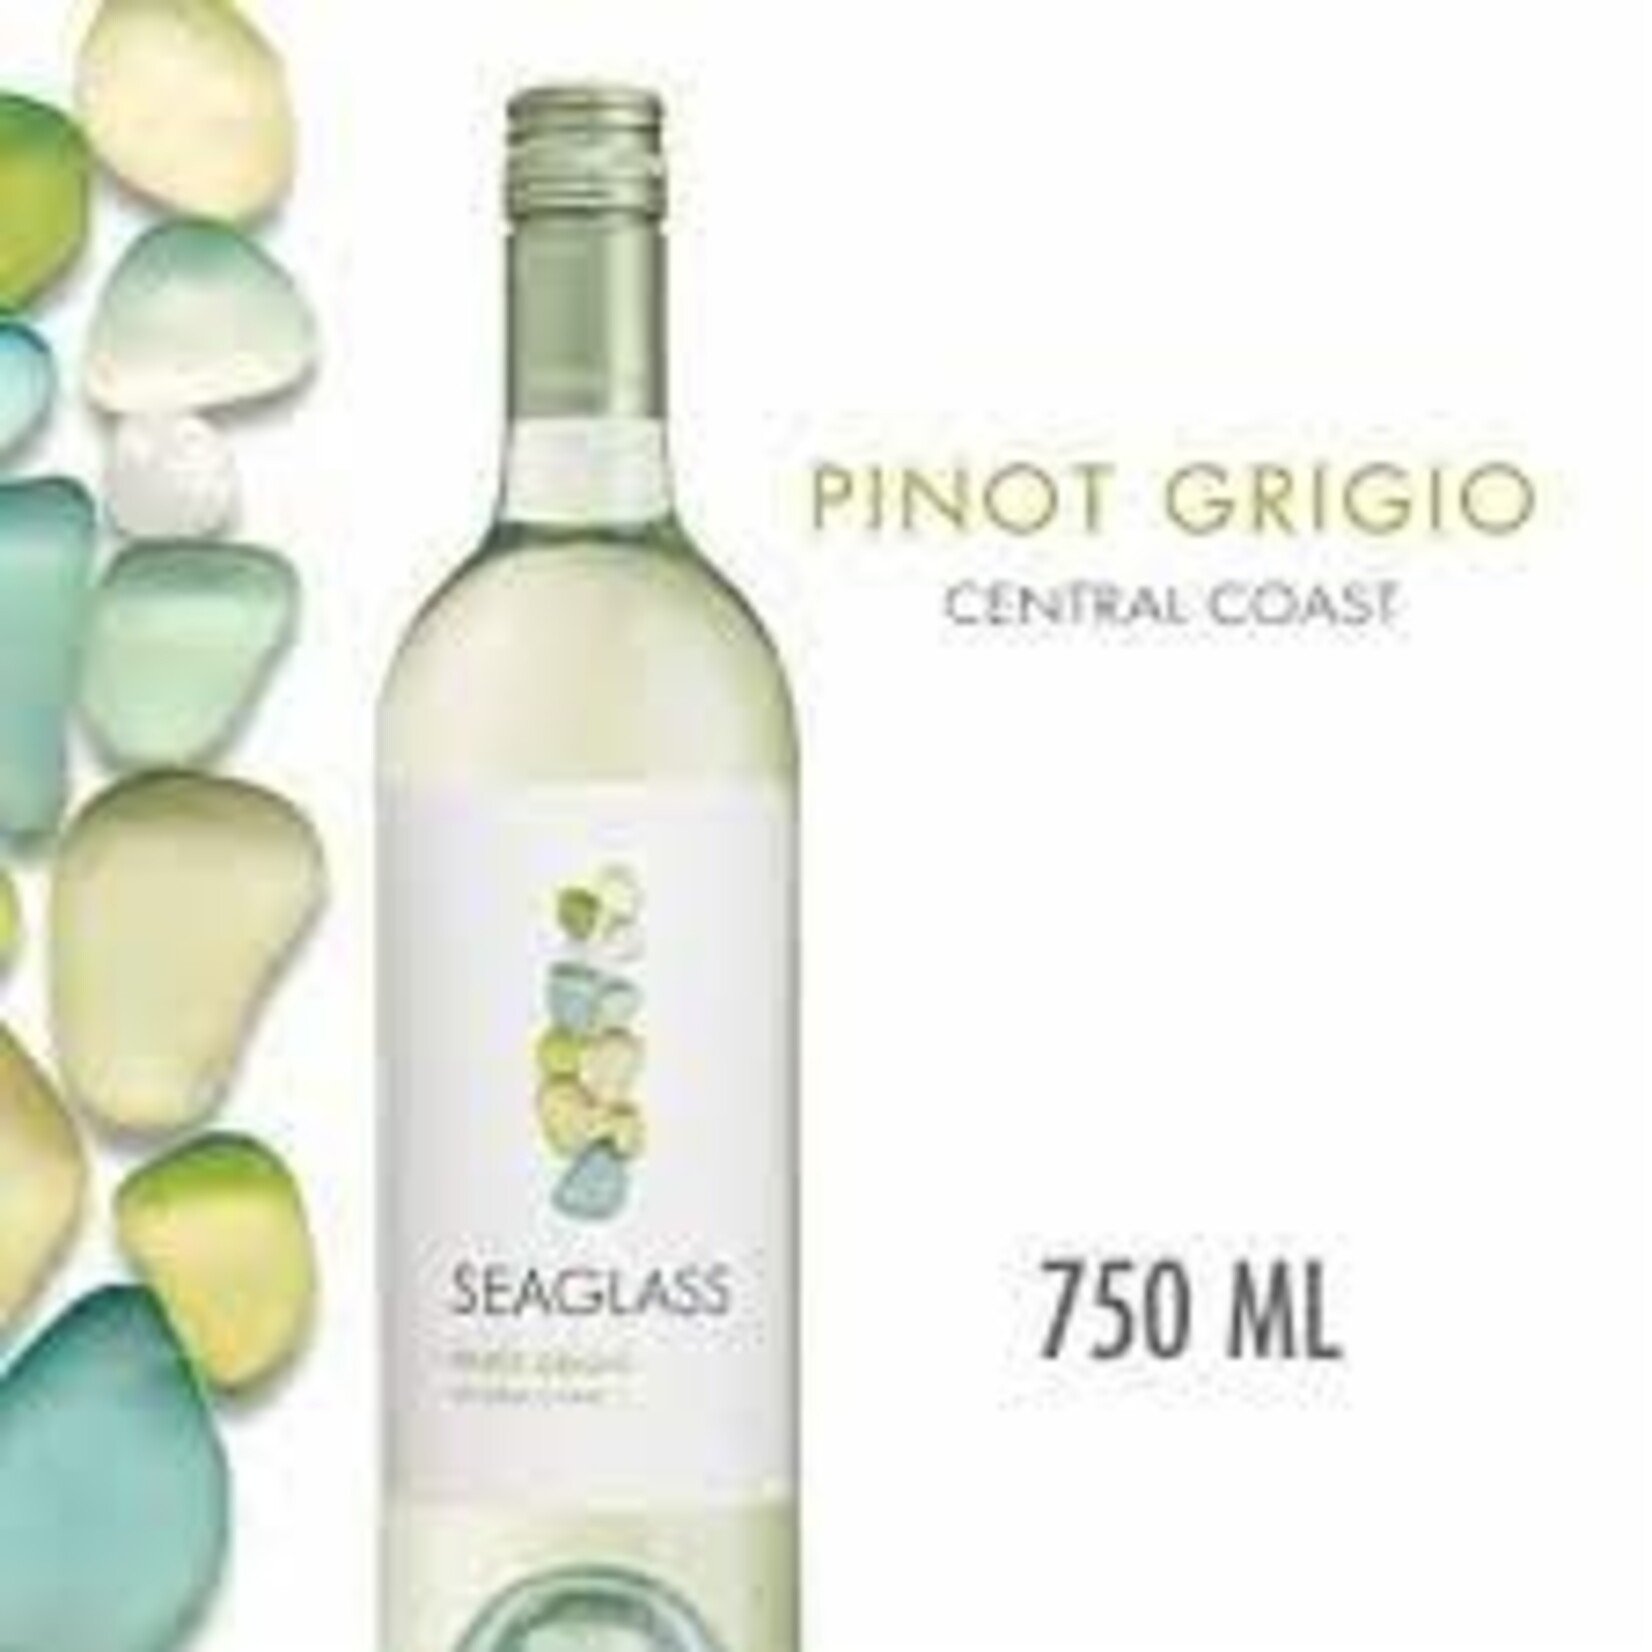 Seaglass Wine Company Seaglass Pinot Grigio 2021 Central Coast, California